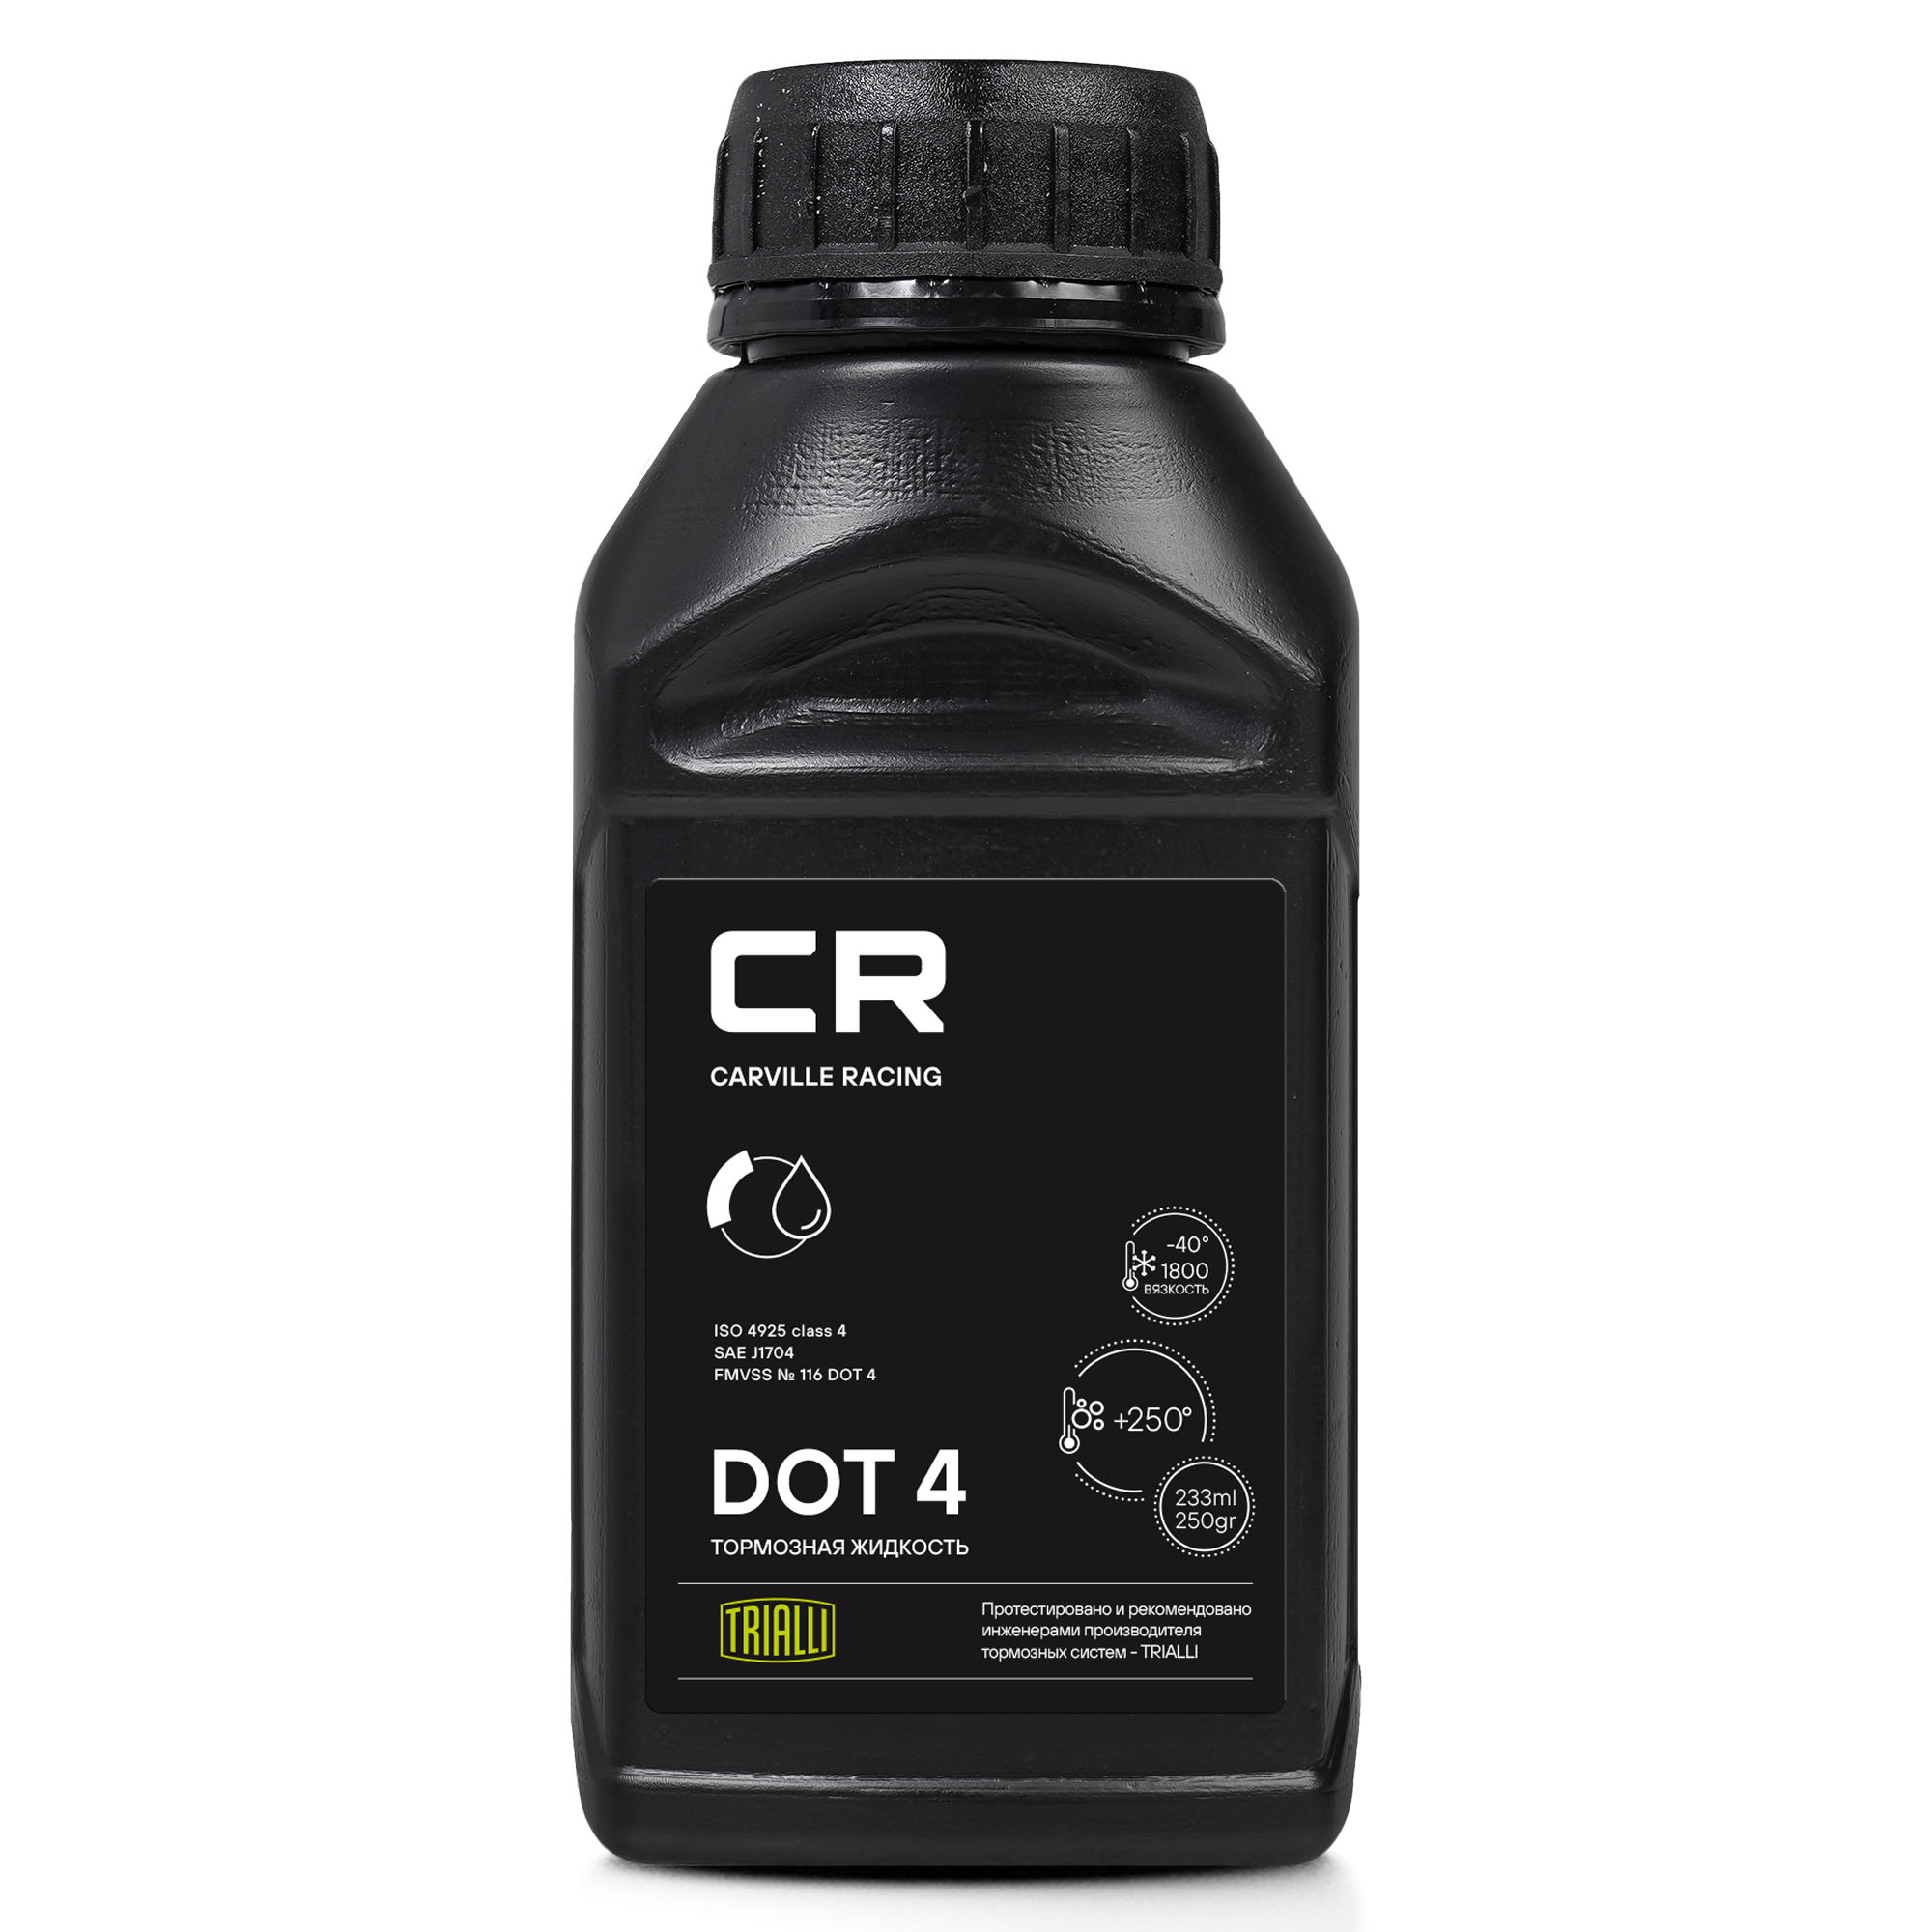 Жидкость тормозная CR DOT 4, t>250°C, вязкость<1500, 233мл/250гр - Carville Racing L4250254